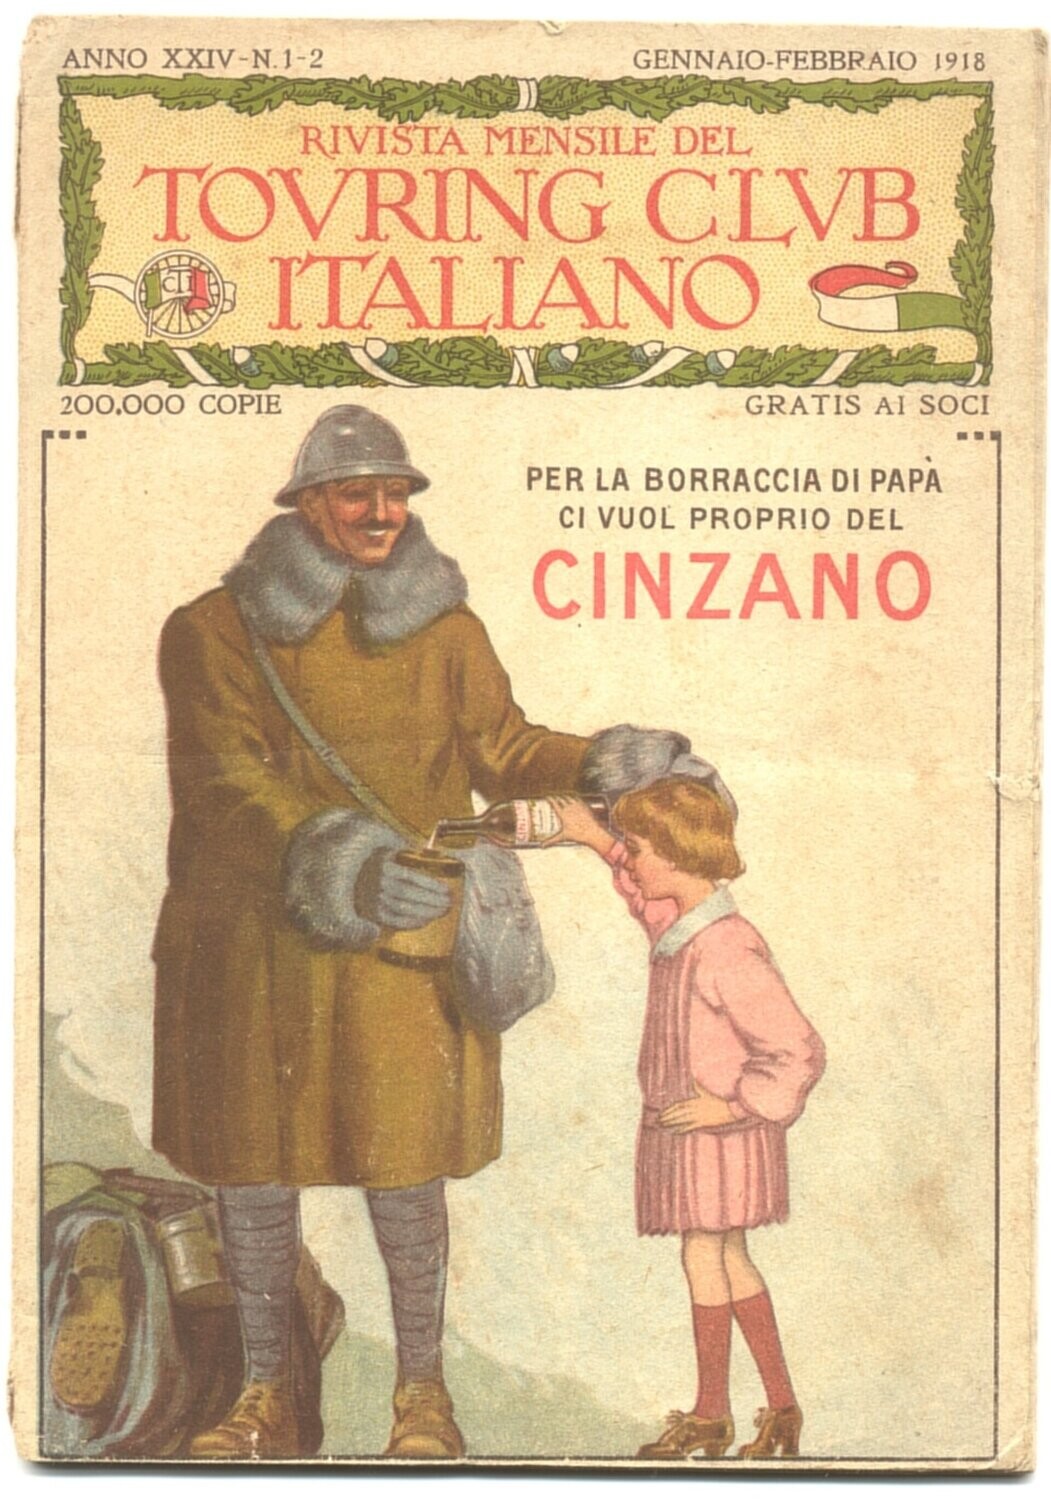 Rivista mensile del touring club italiano Anno XXIV N.1-2 del 1918